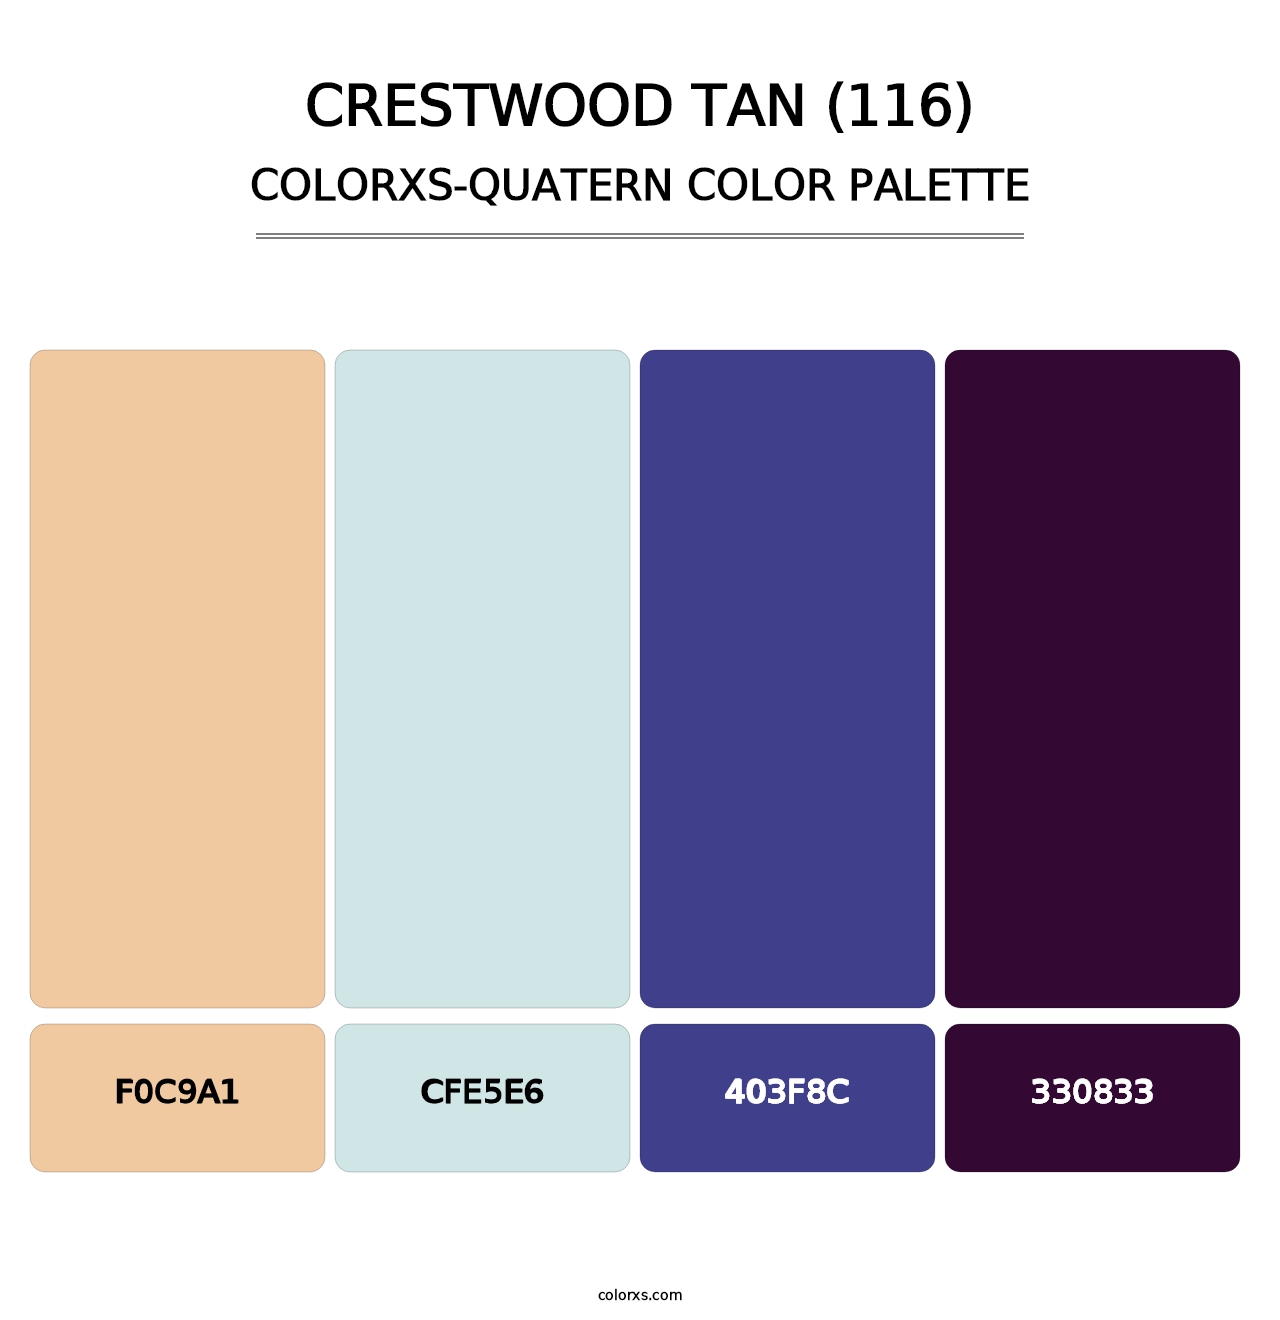 Crestwood Tan (116) - Colorxs Quatern Palette